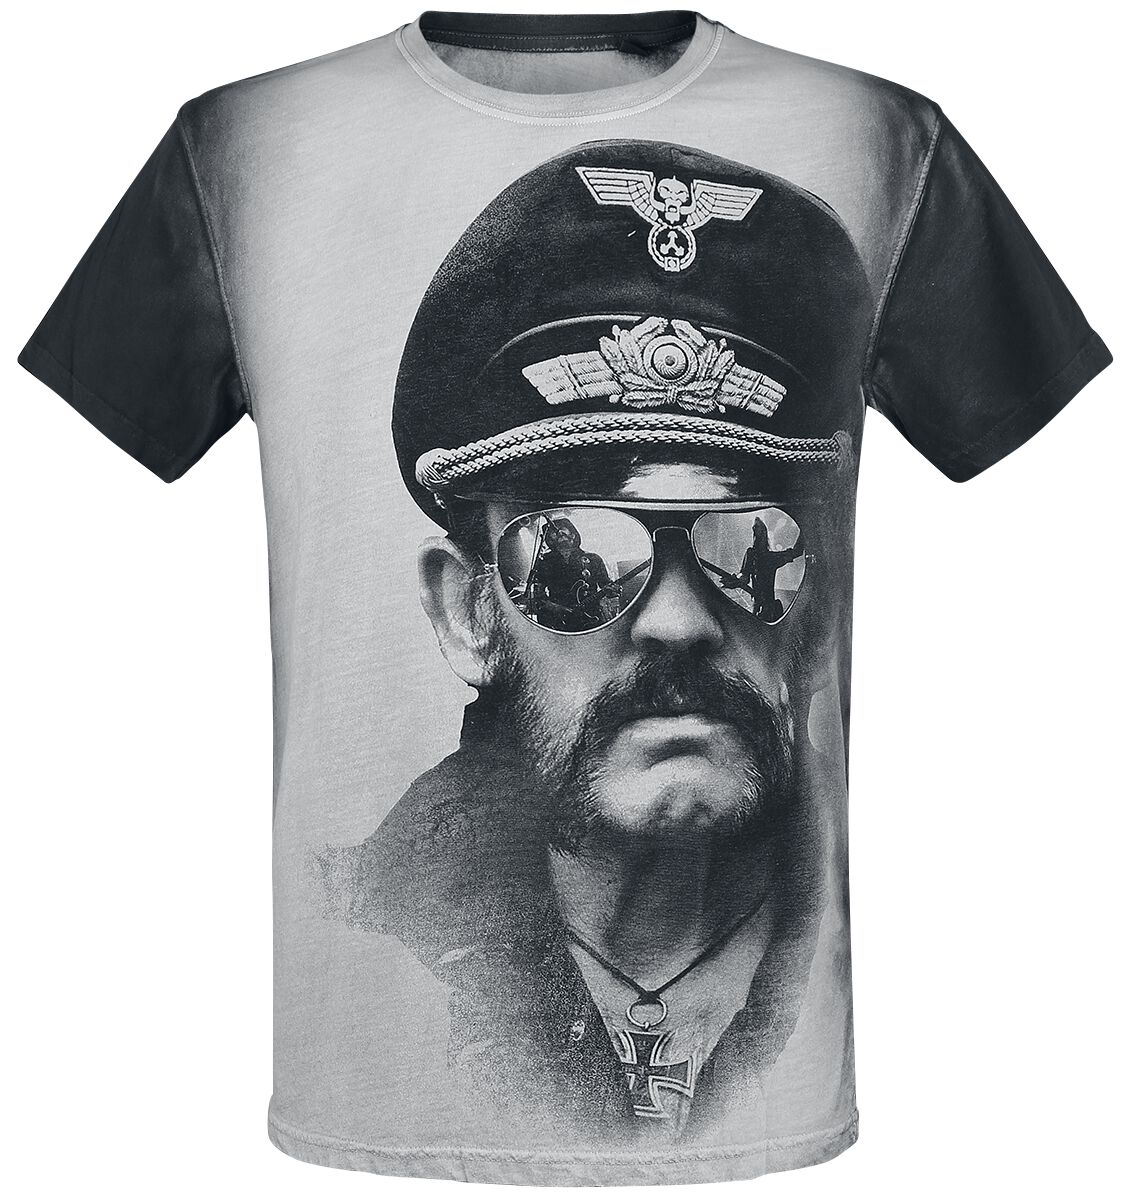 Lemmy T-Shirt - Kilmister Side - S bis XXL - für Männer - Größe XL - altweiß/grau  - Lizenziertes Merchandise!